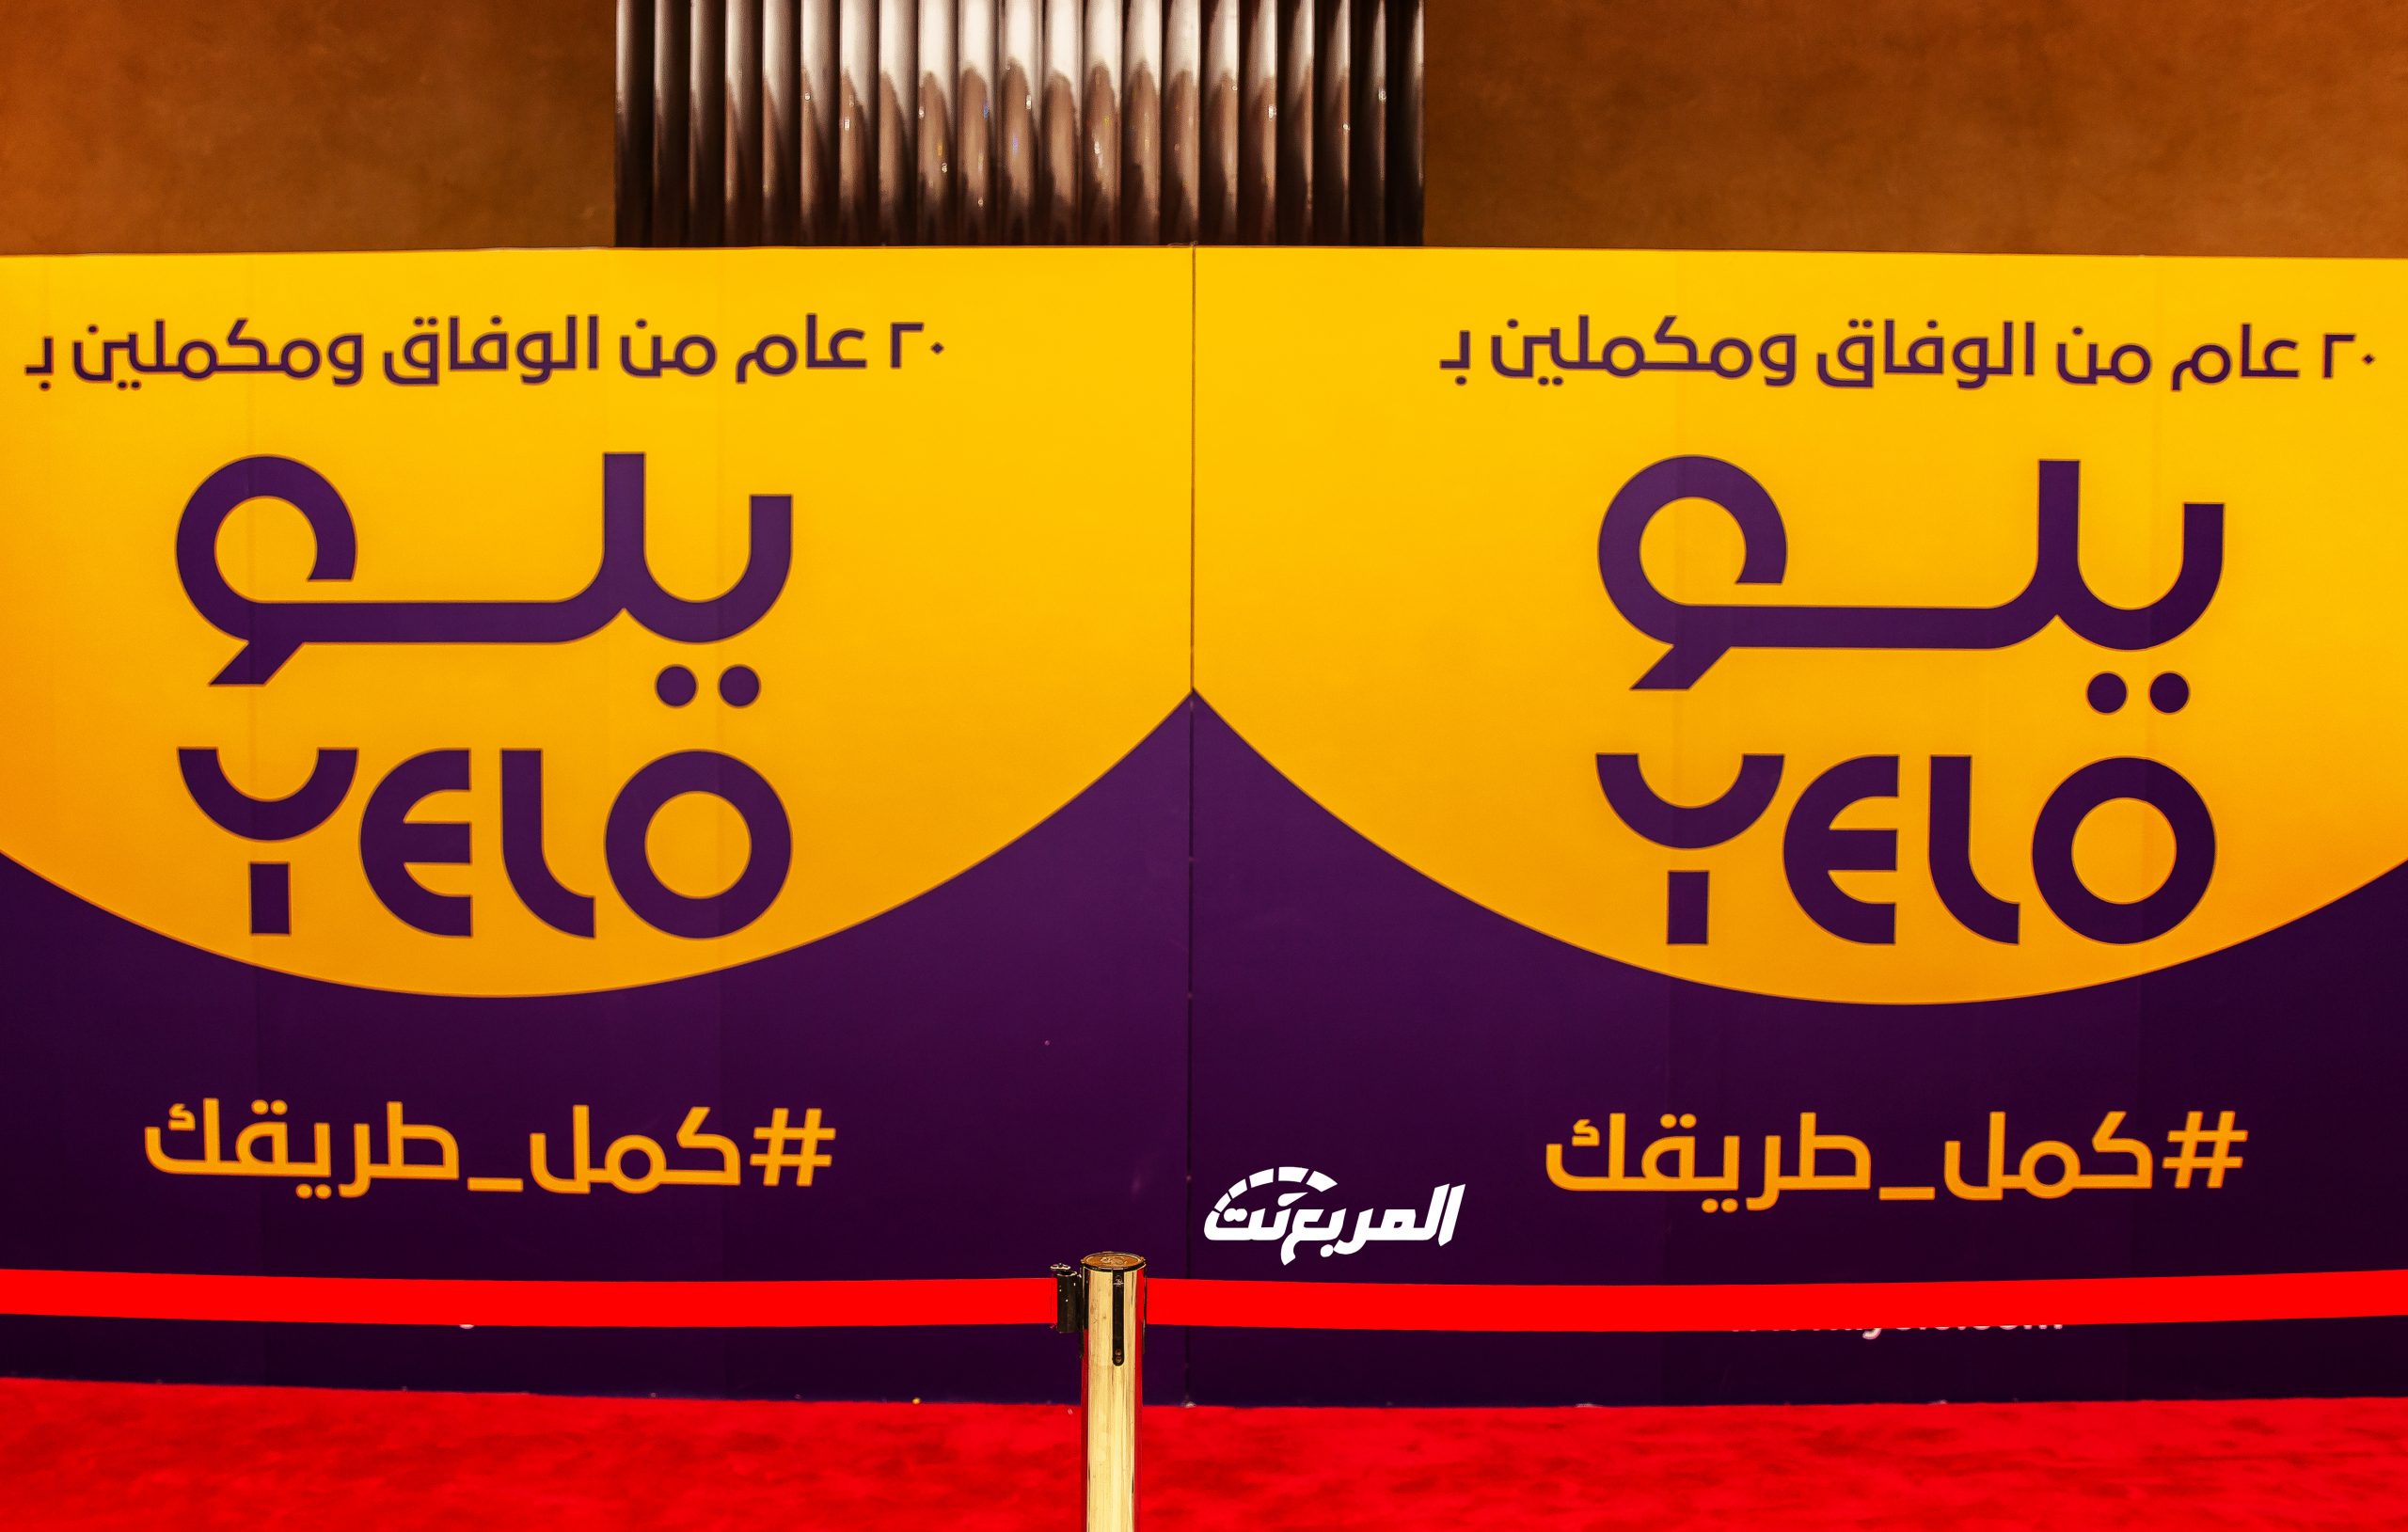 صور من حفل تدشين هوية الوفاق الجديدة ( يلو ) 53